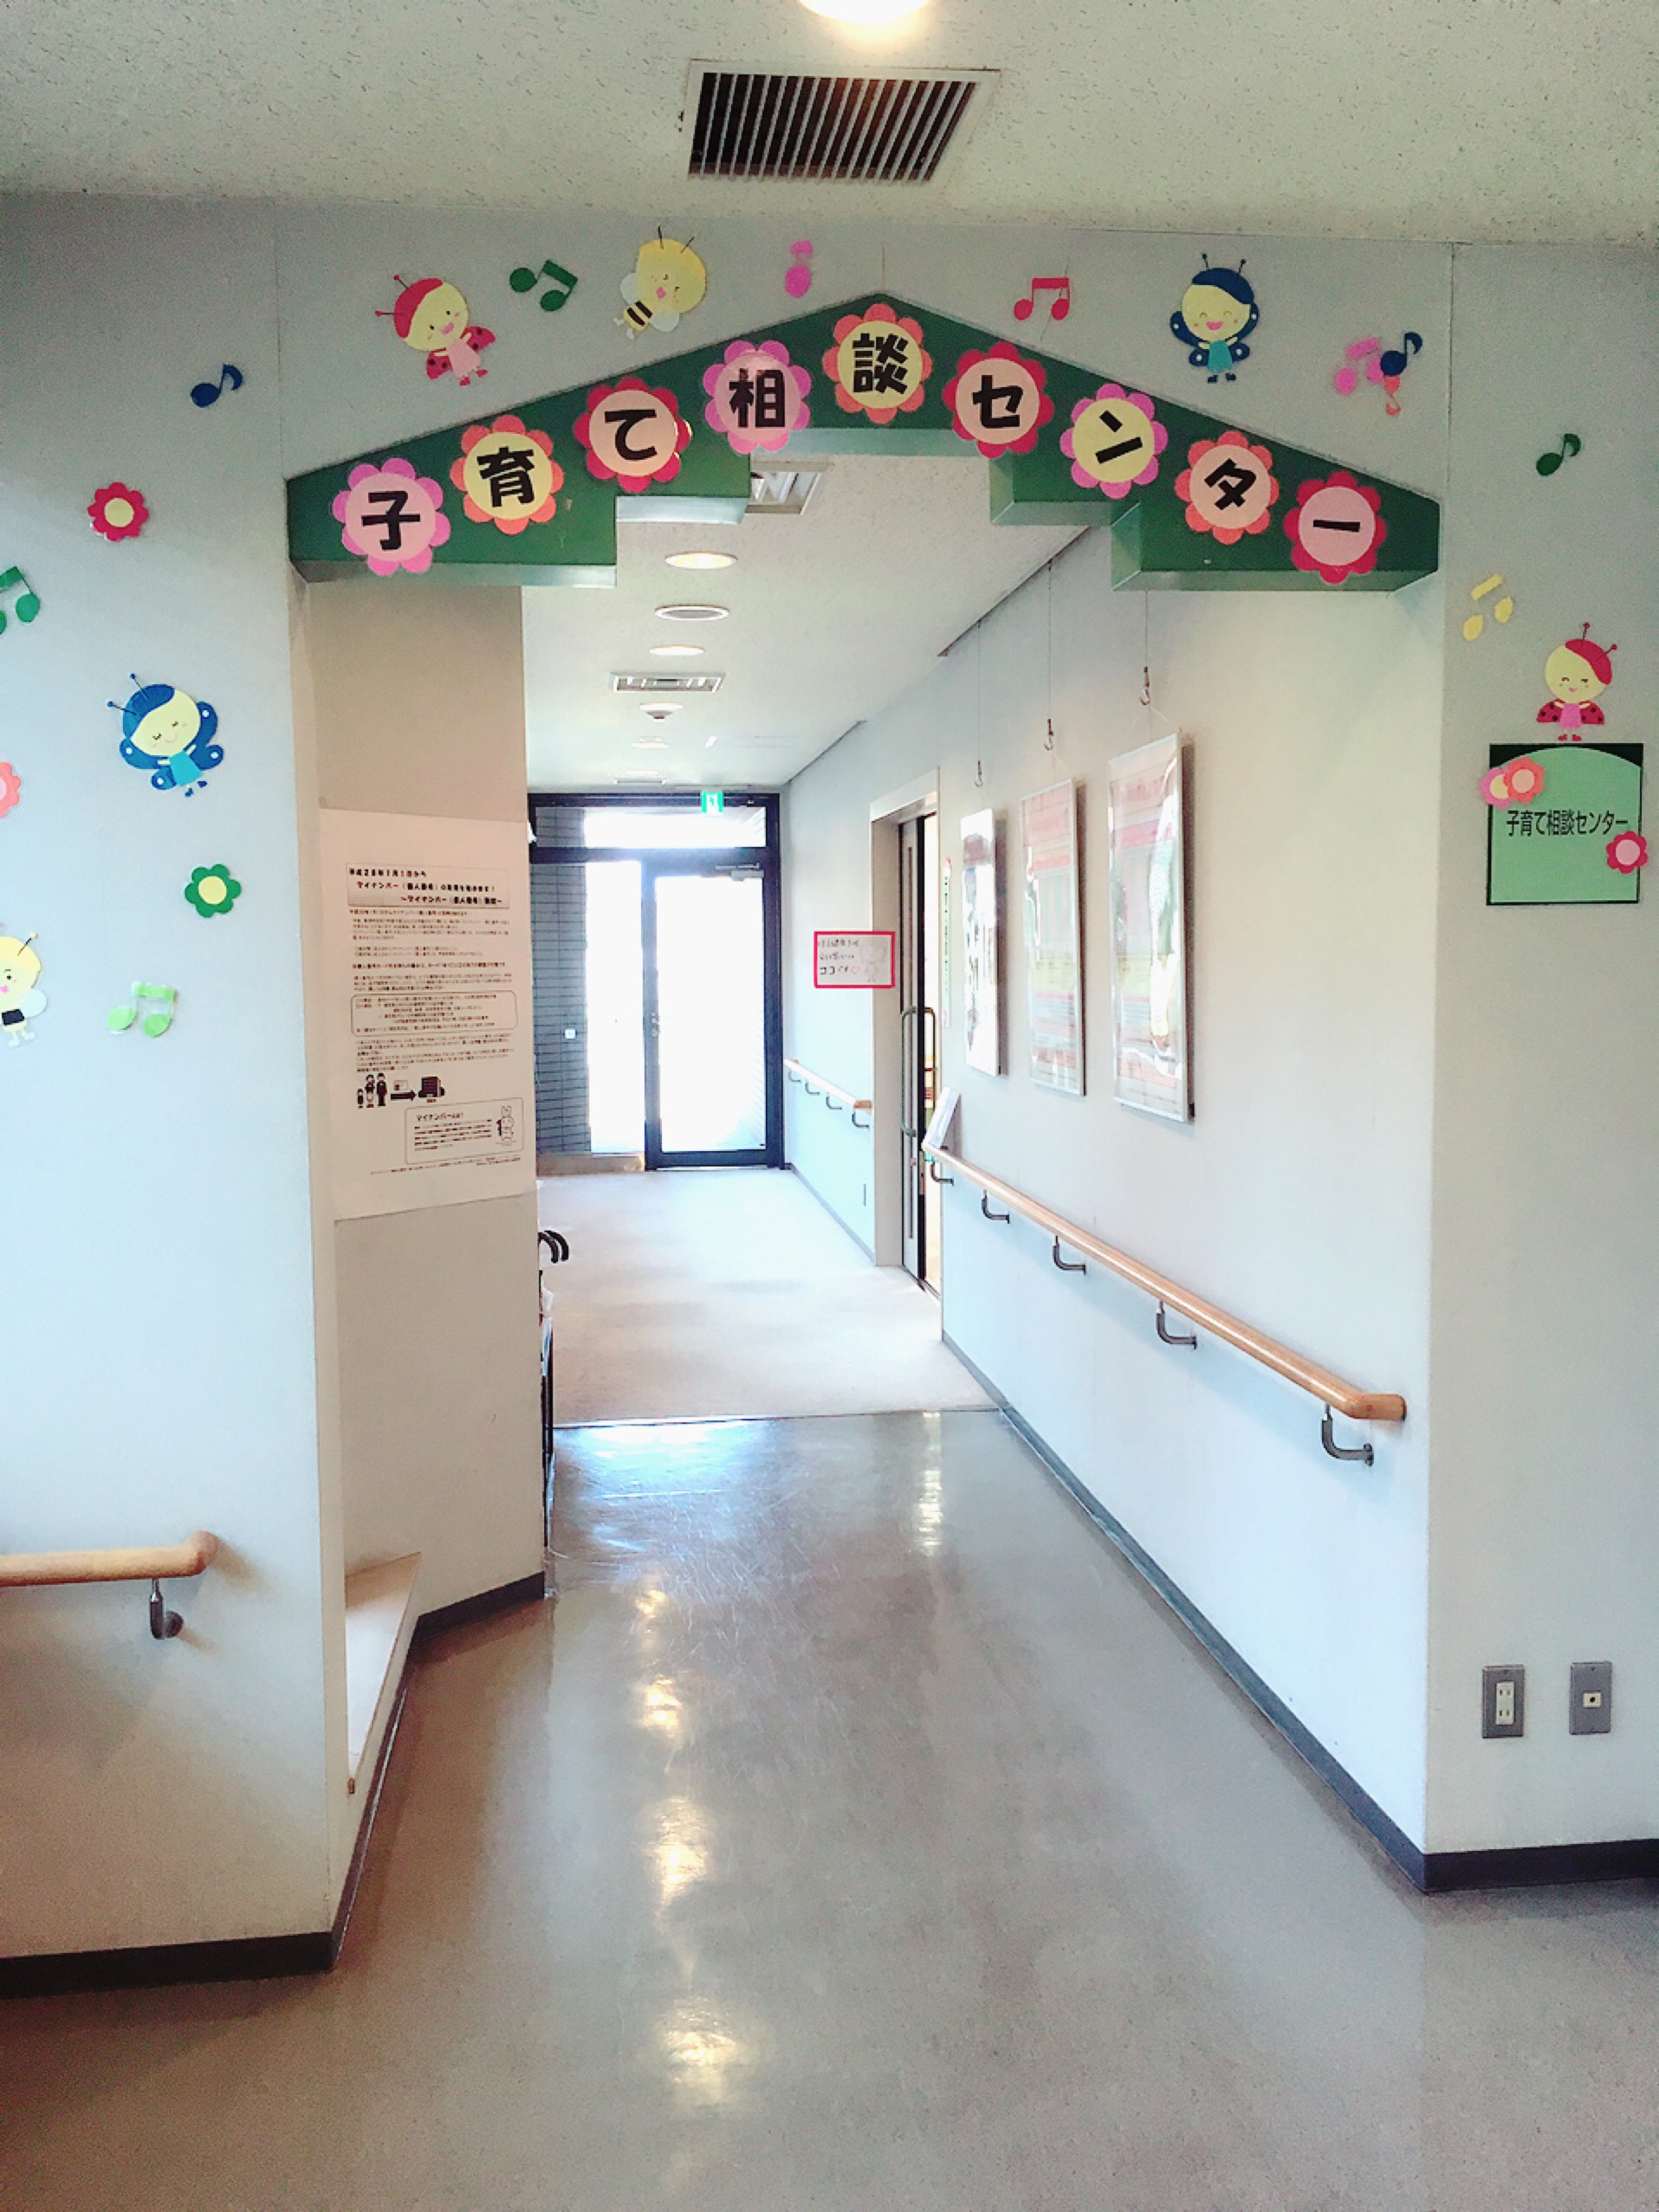 6月1日より草津市に子育て相談センターが新たに開設されました！